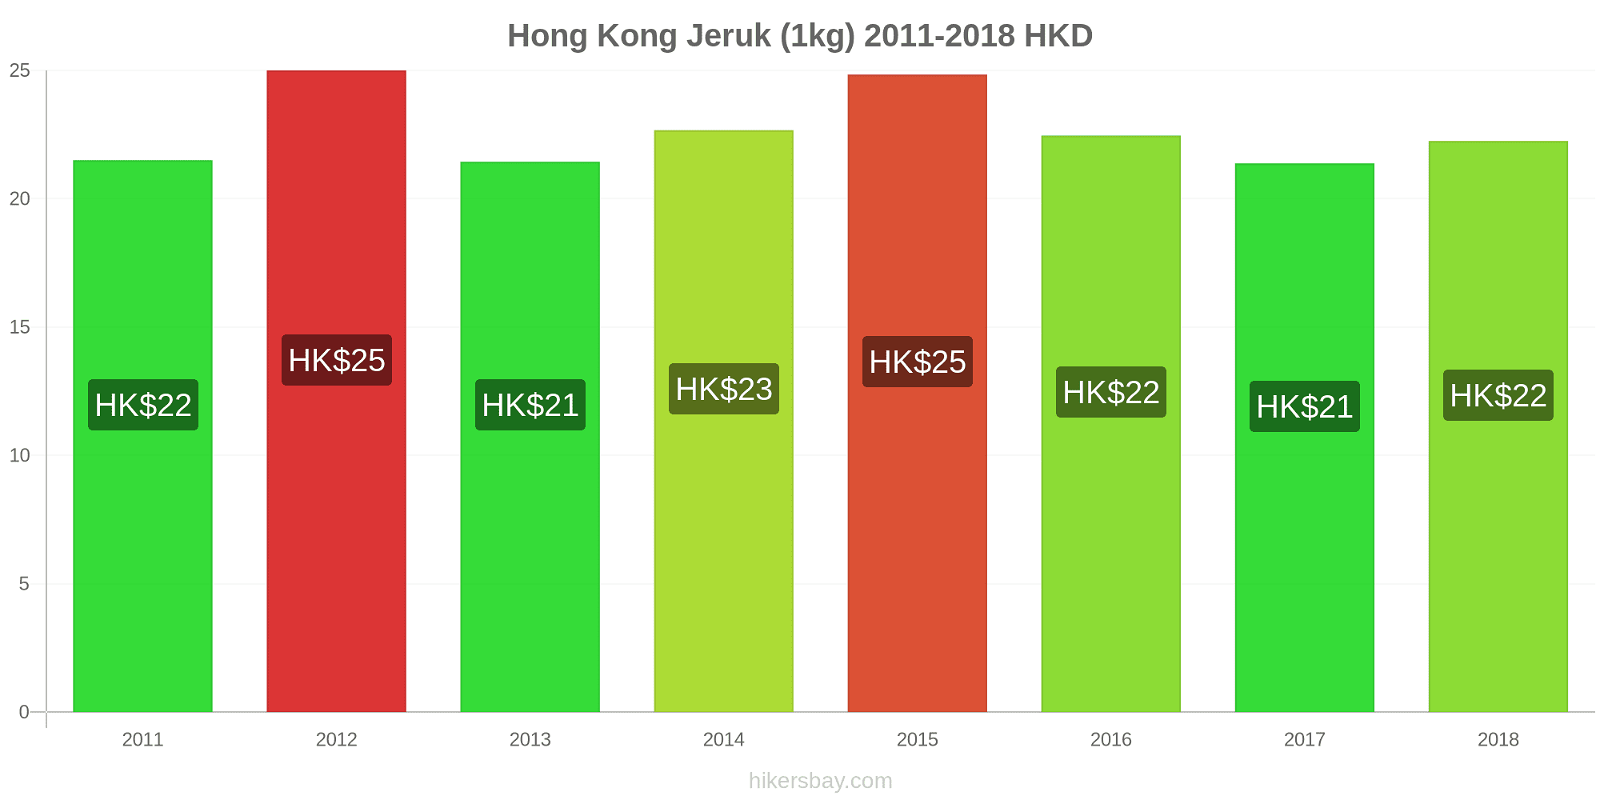 Hong Kong perubahan harga Jeruk (1kg) hikersbay.com